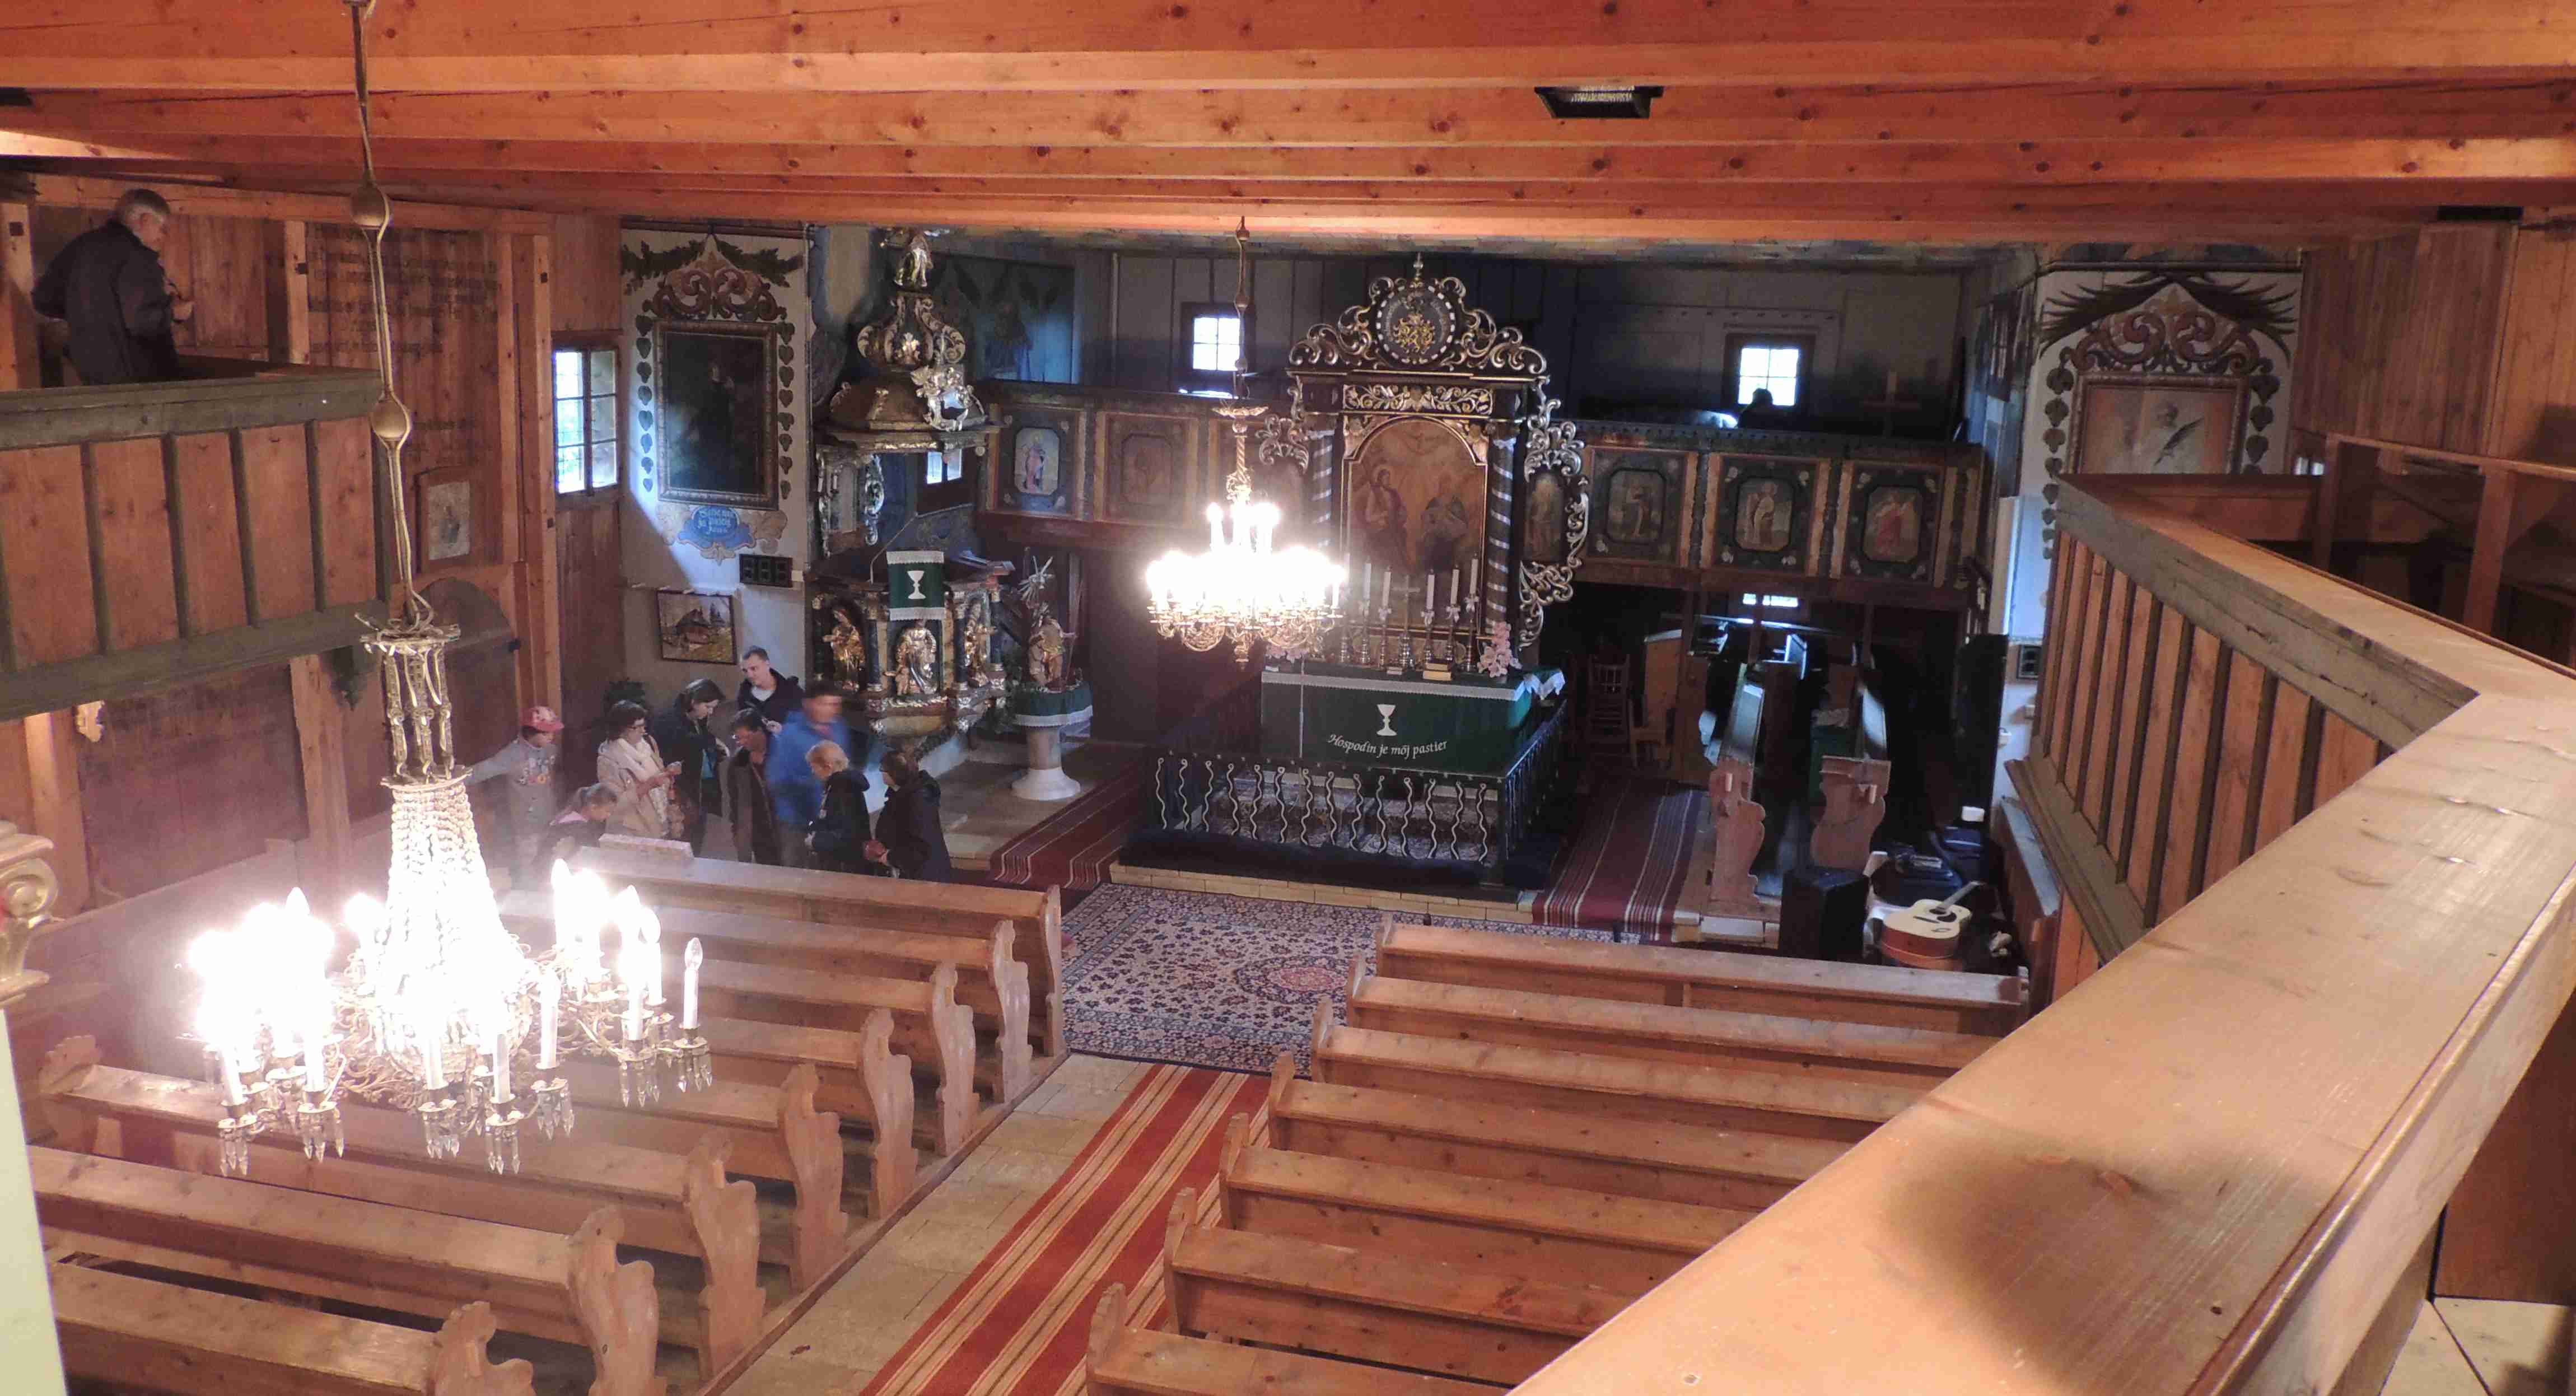 Pohľad z chóru na interiér chrámu